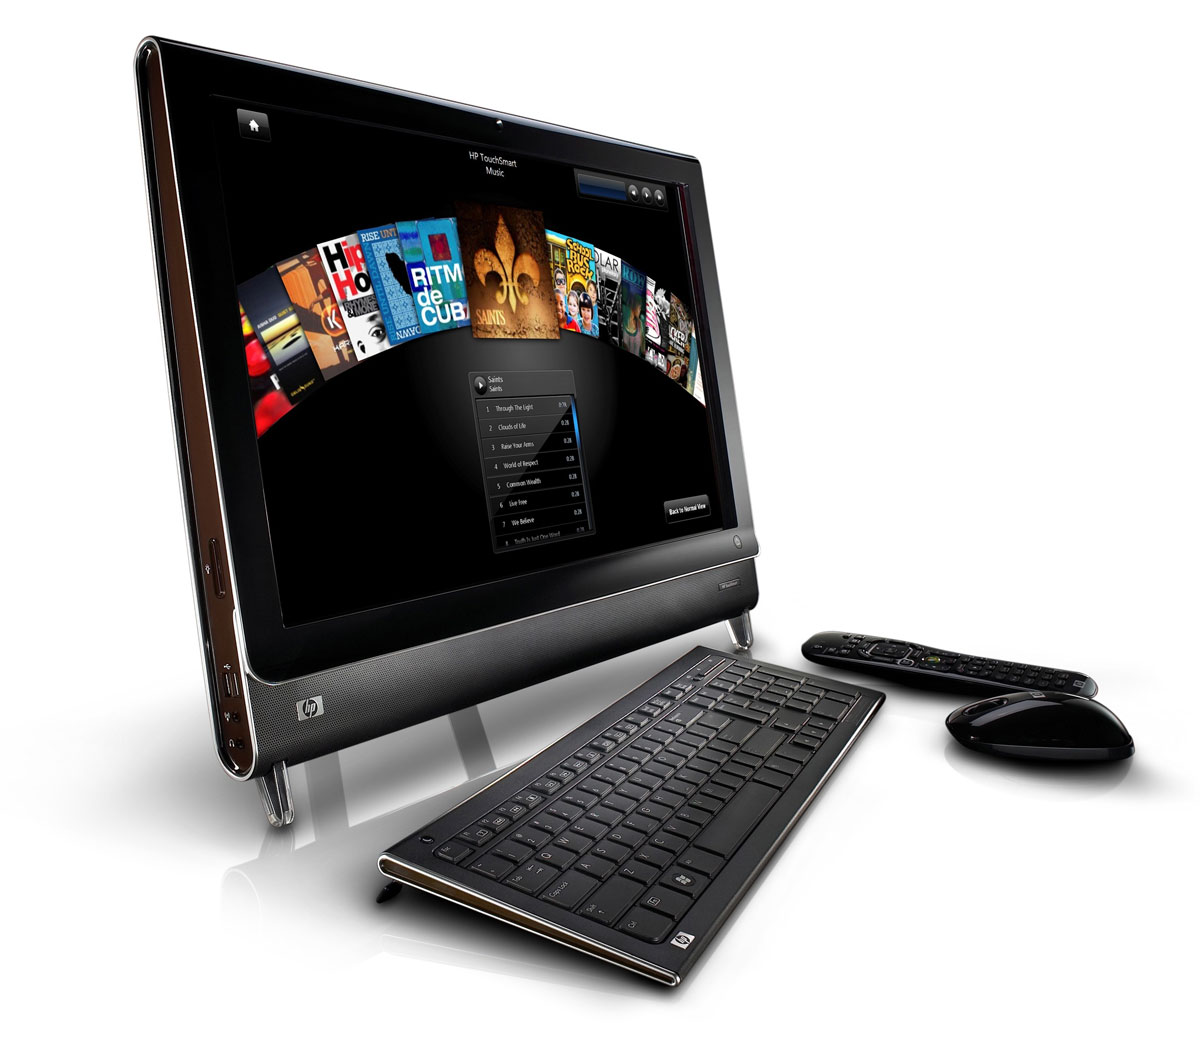 HP TouchSmart IQ830 - Notebookcheck.net External Reviews